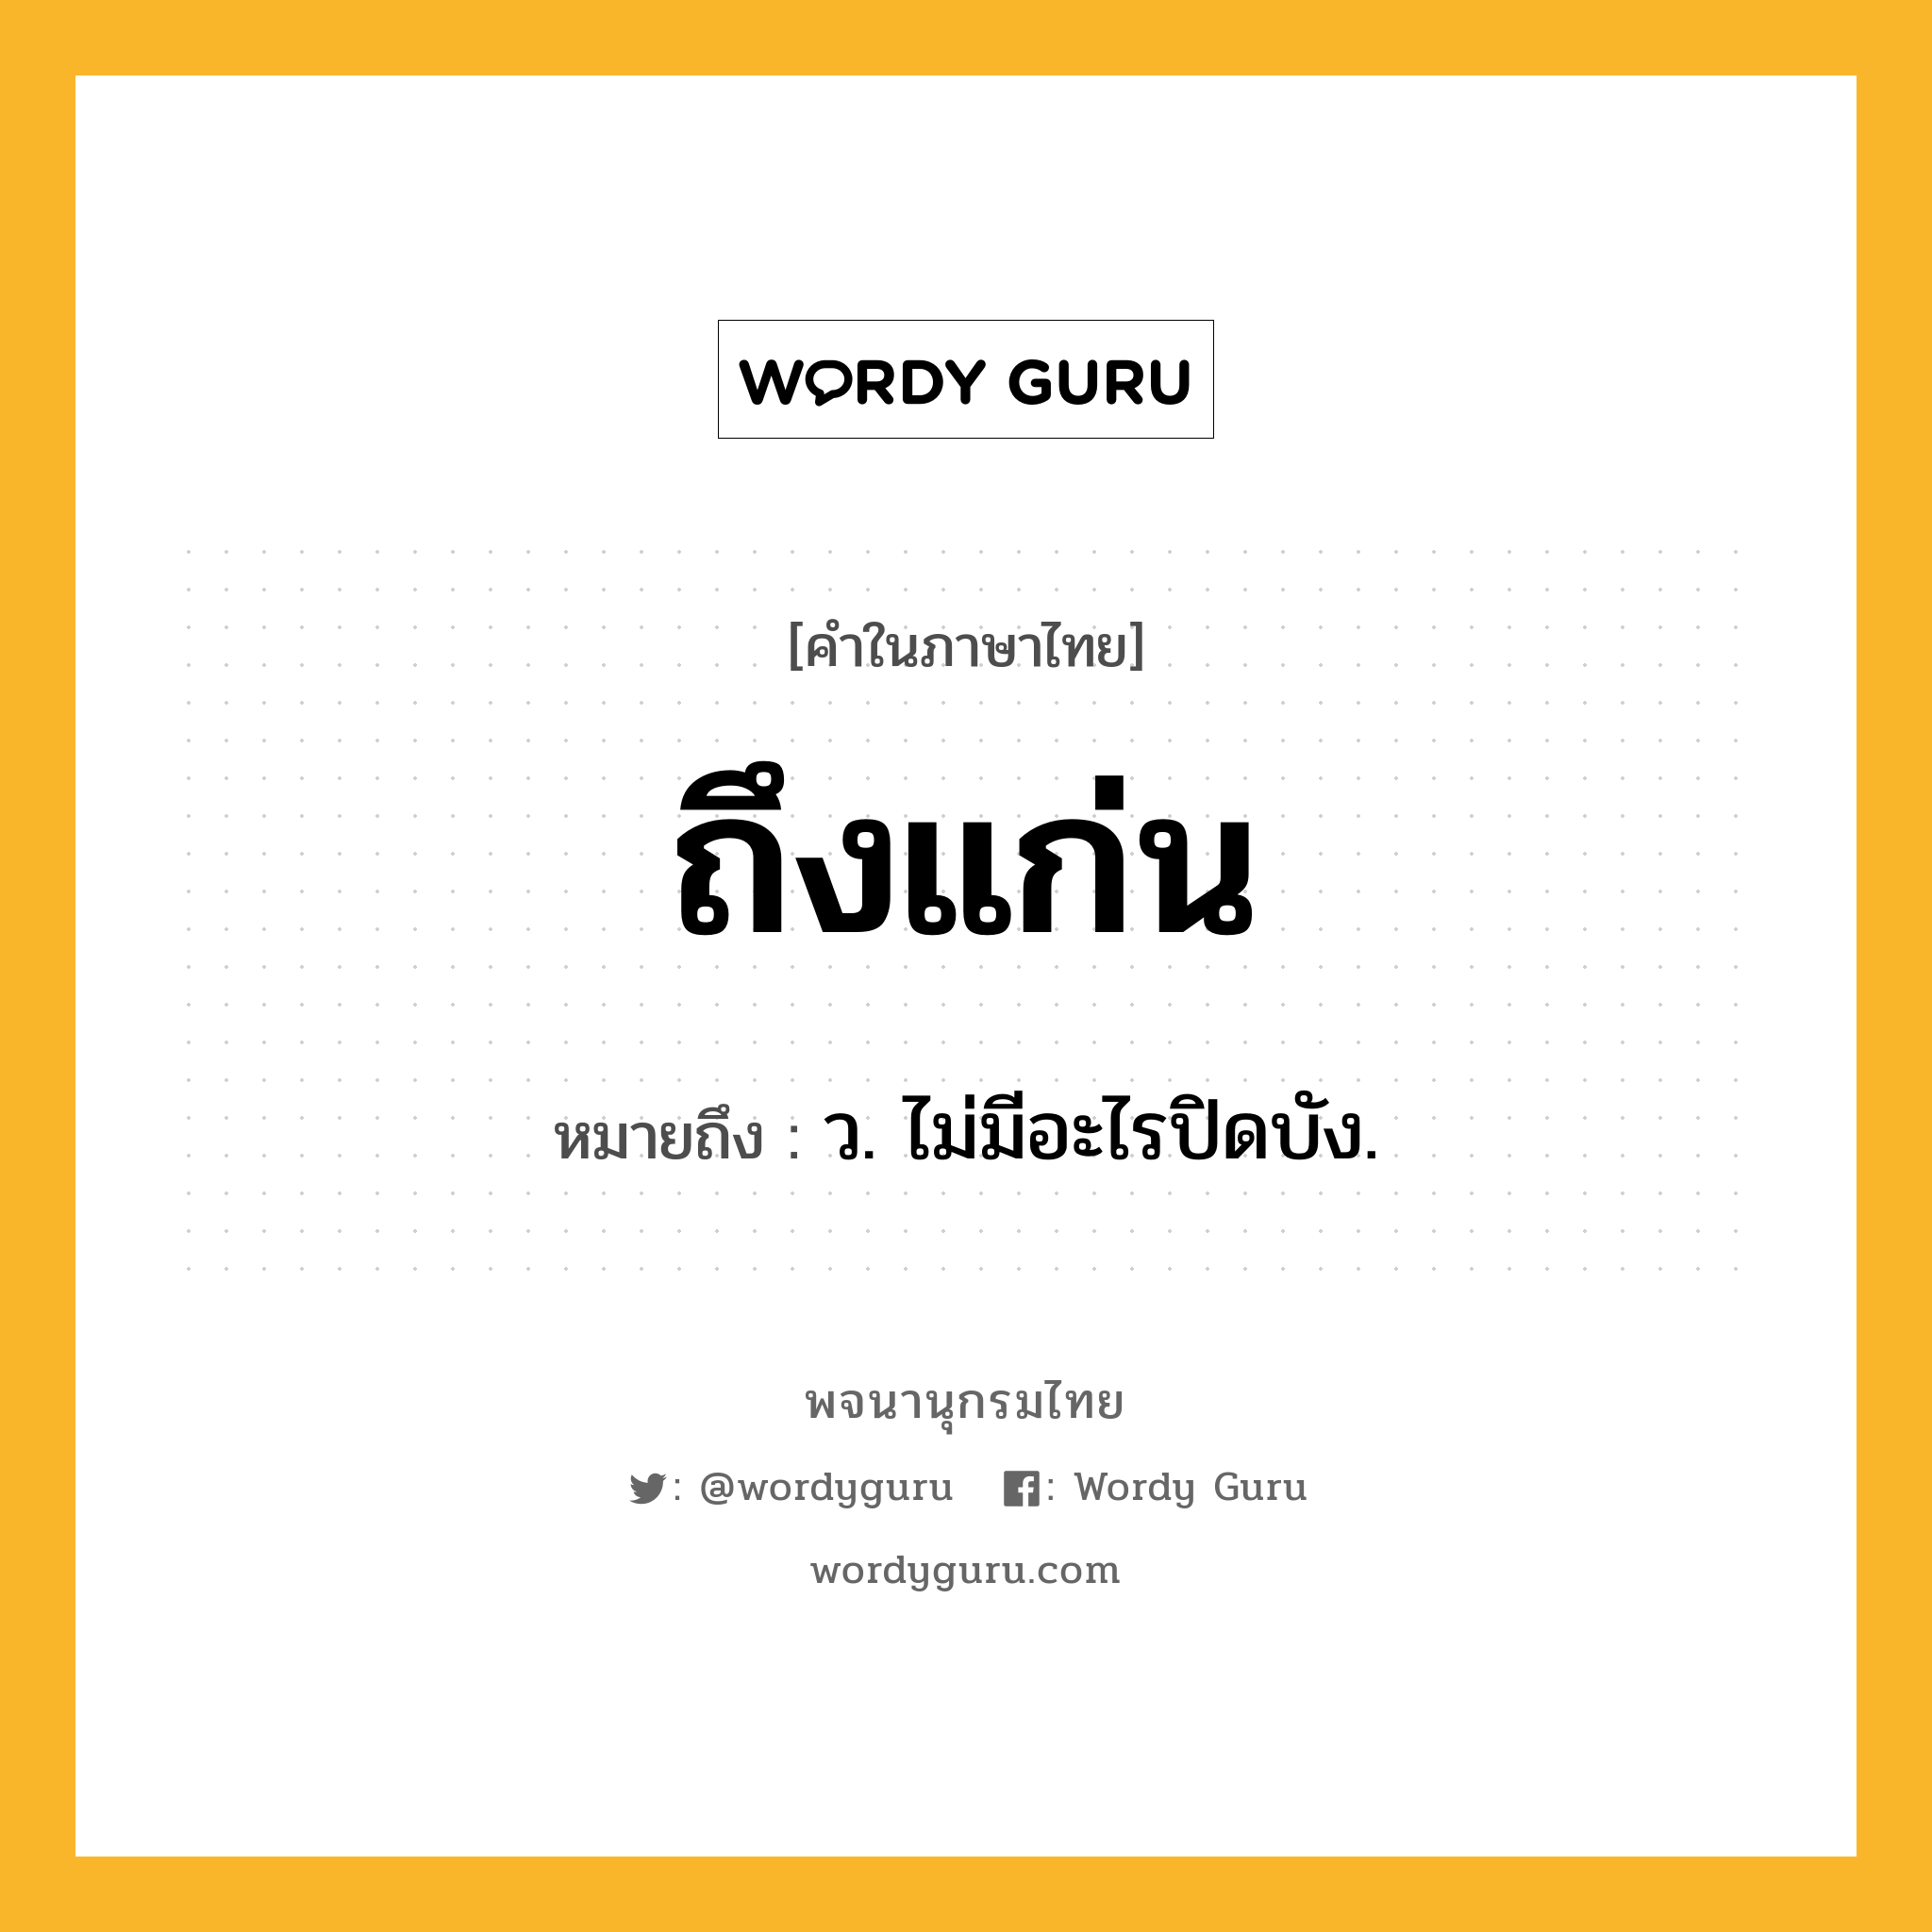 ถึงแก่น หมายถึงอะไร?, คำในภาษาไทย ถึงแก่น หมายถึง ว. ไม่มีอะไรปิดบัง.